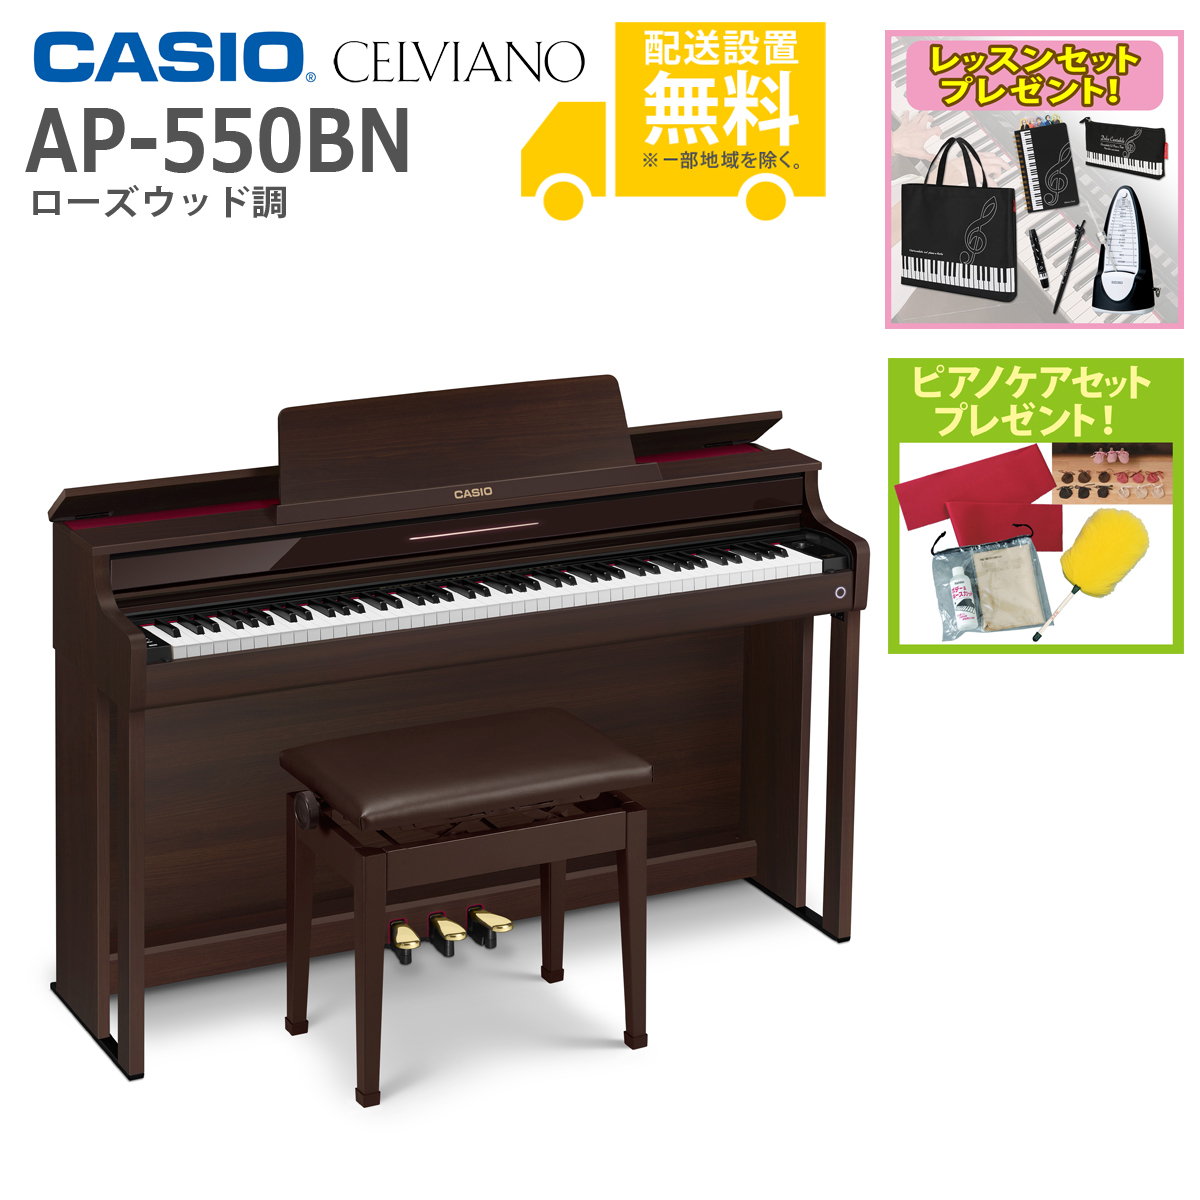 (全国組立設置無料)CASIO / AP-550BN ローズウッド調 電子ピアノ(レッスン+ケアSETプレゼント)(代引不可)(メーカー3年保証)